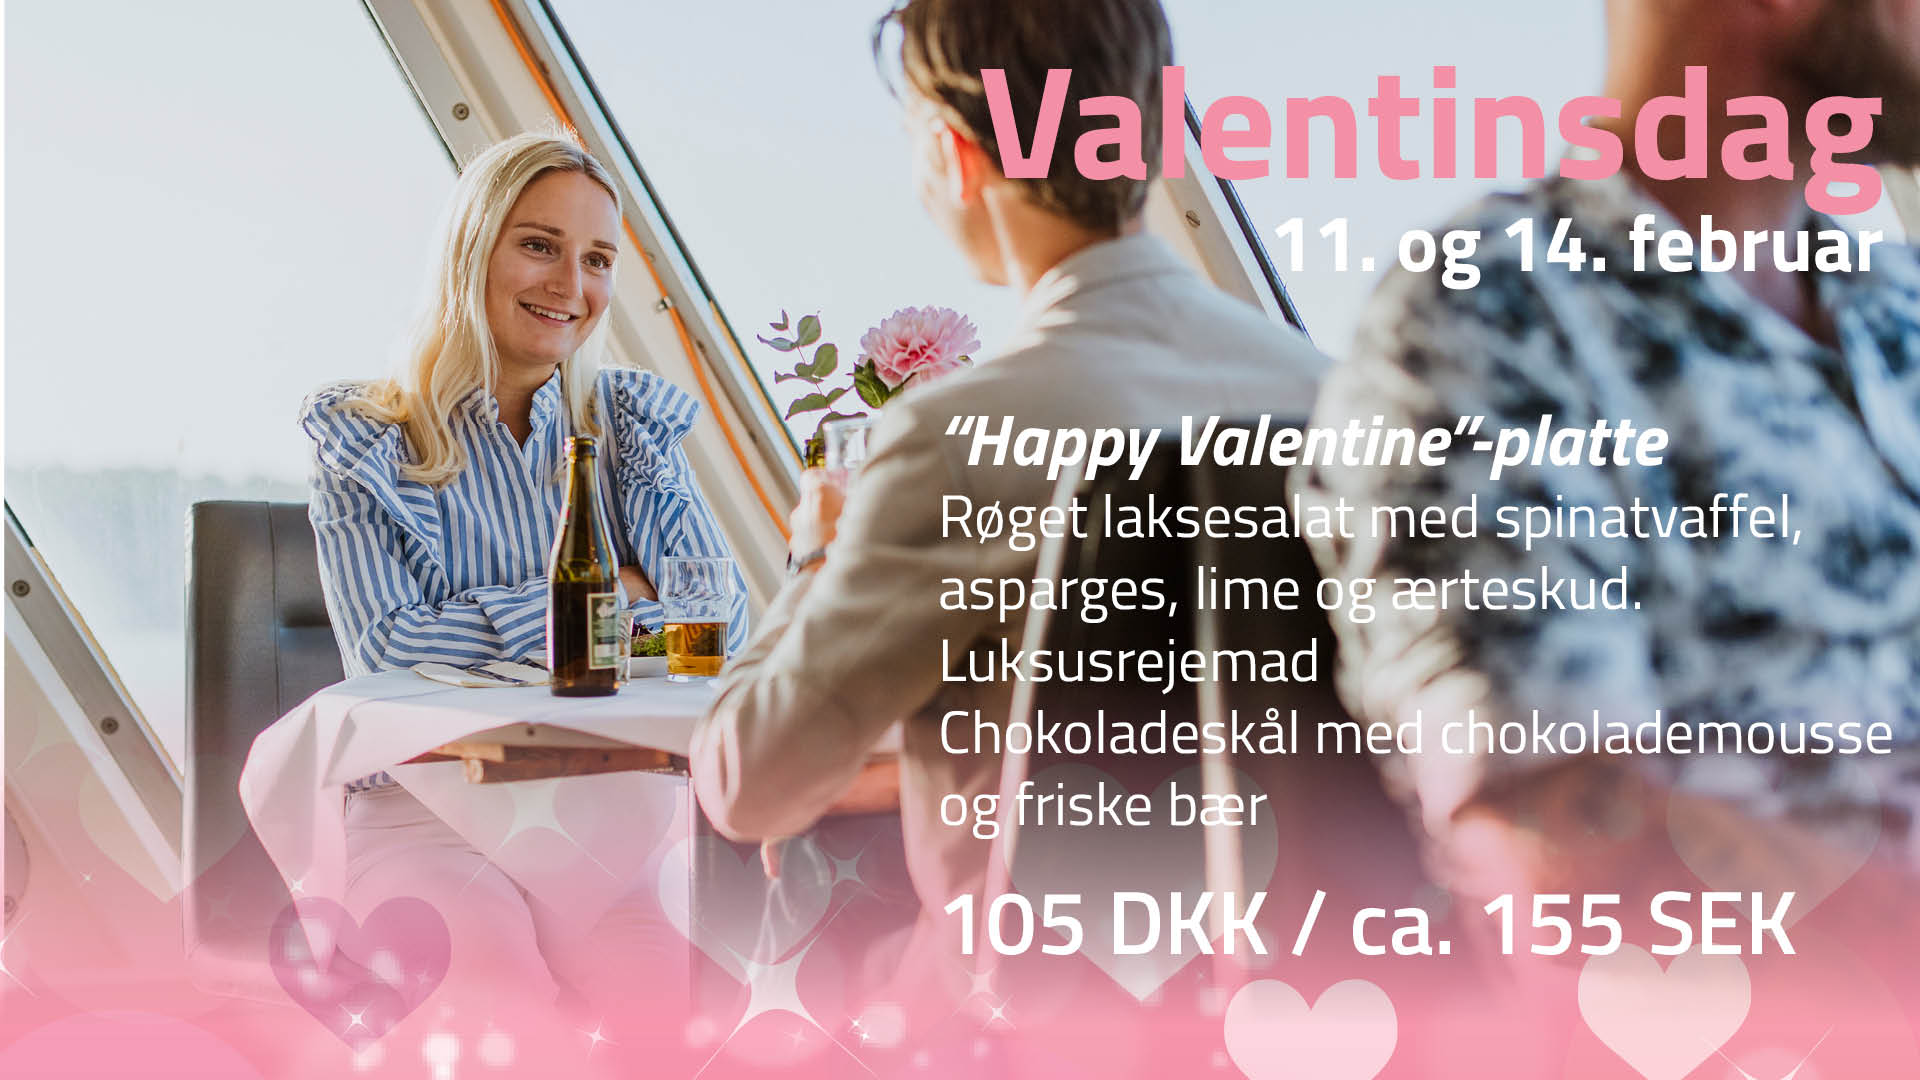 Valentinsdag på Sundbusserne platte DK